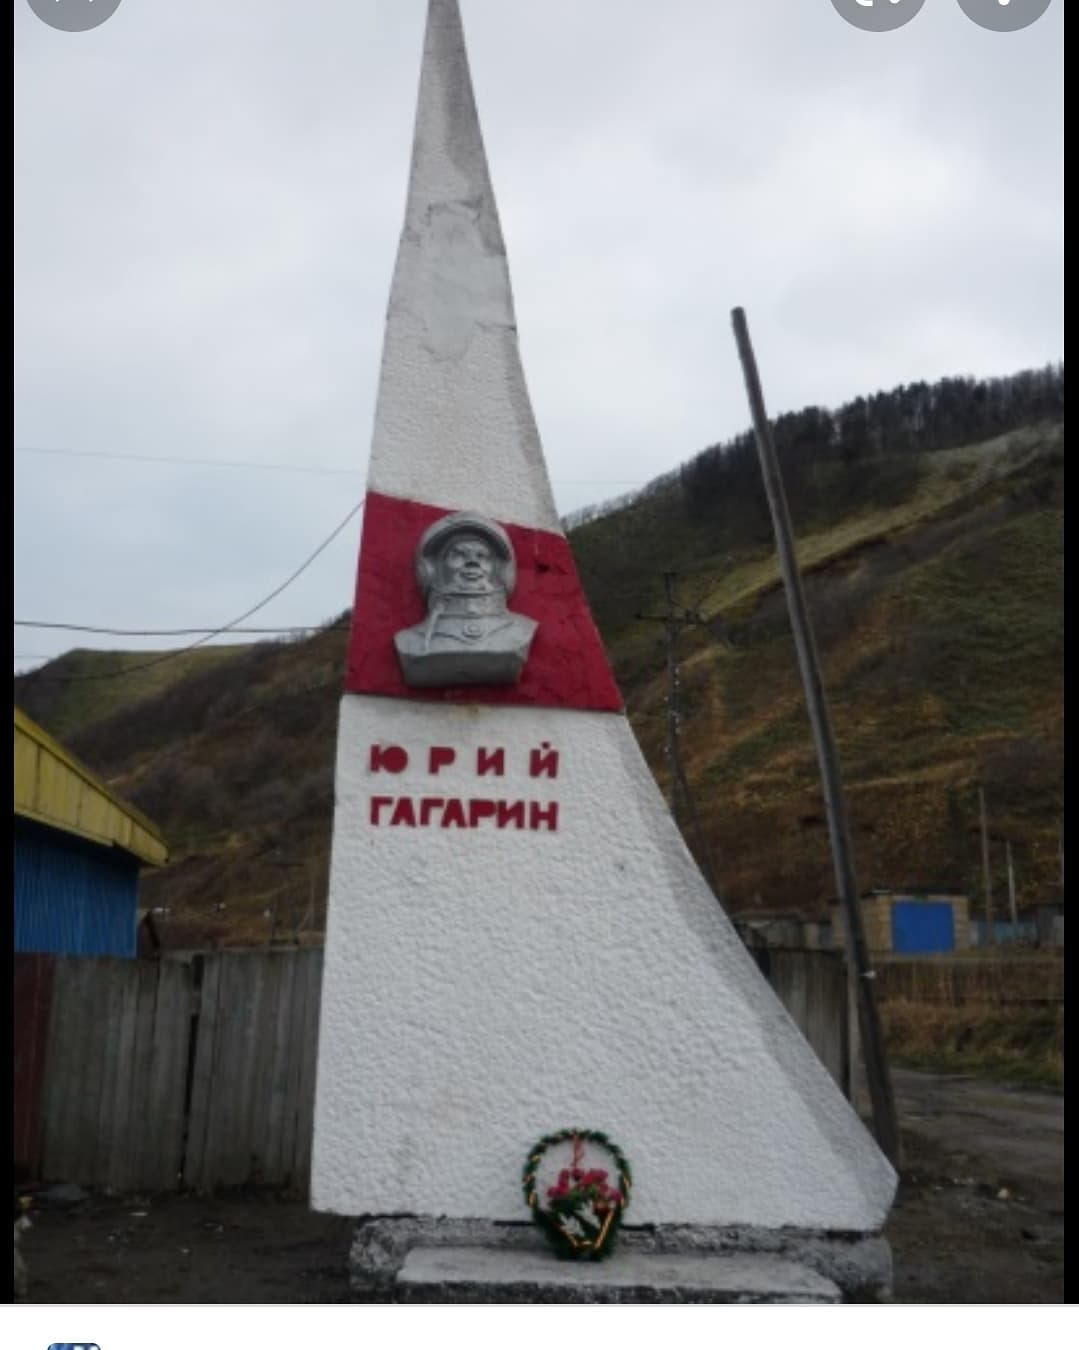 Теряем ценности: жители обнаружили выброшенный памятник Гагарину